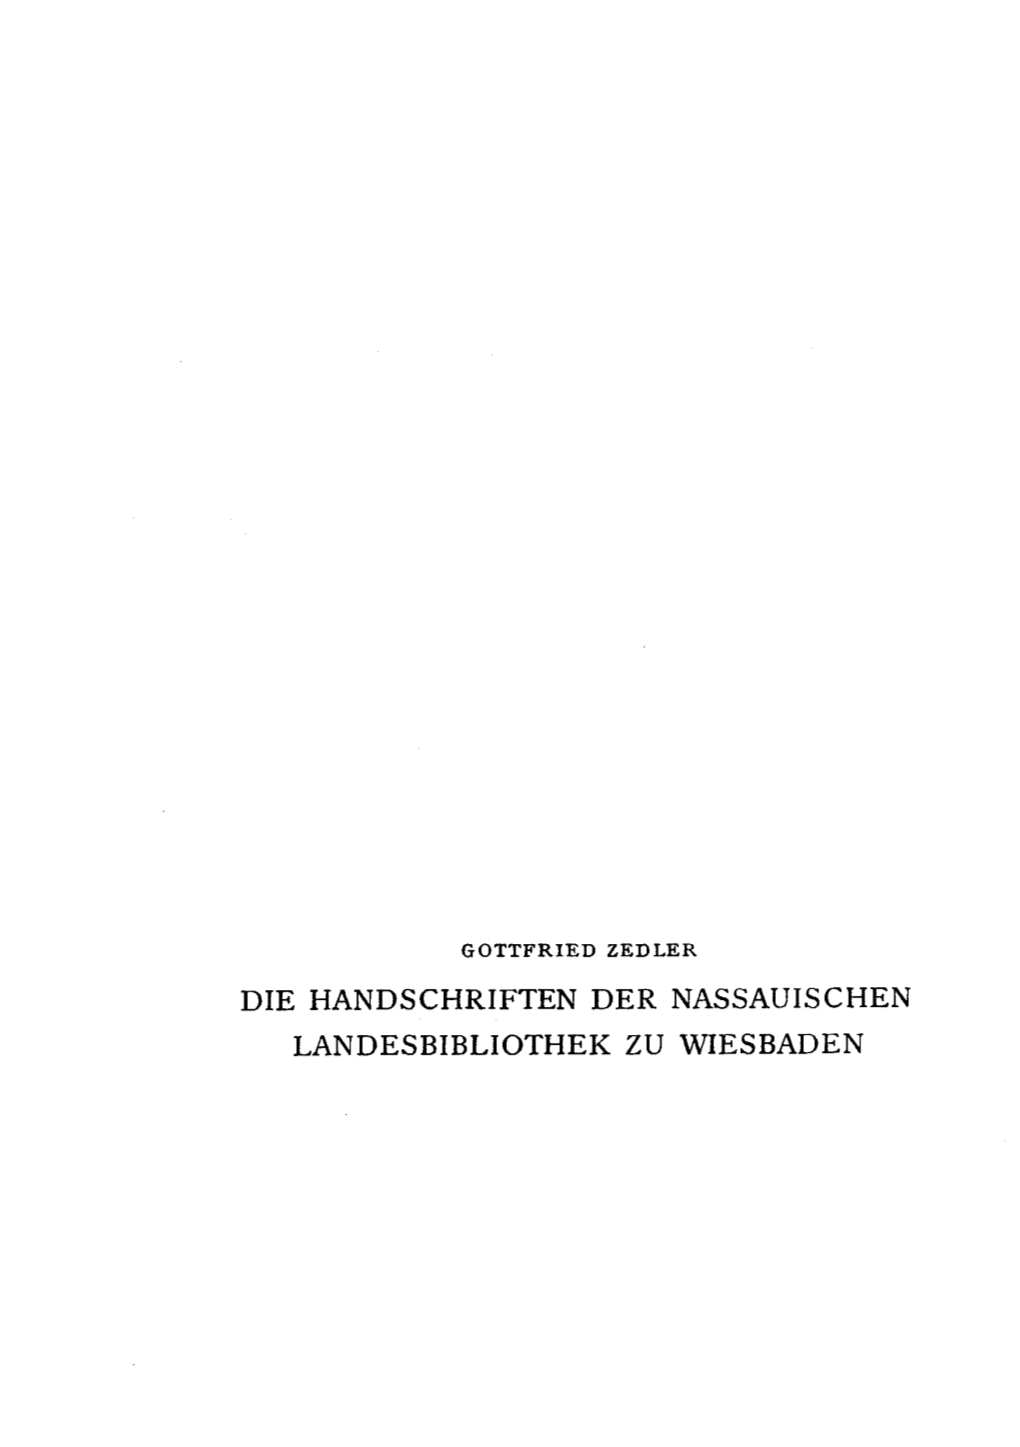 Die Handschriften Der Nassauischen Landes Bibliothek Zu Wiesbaden